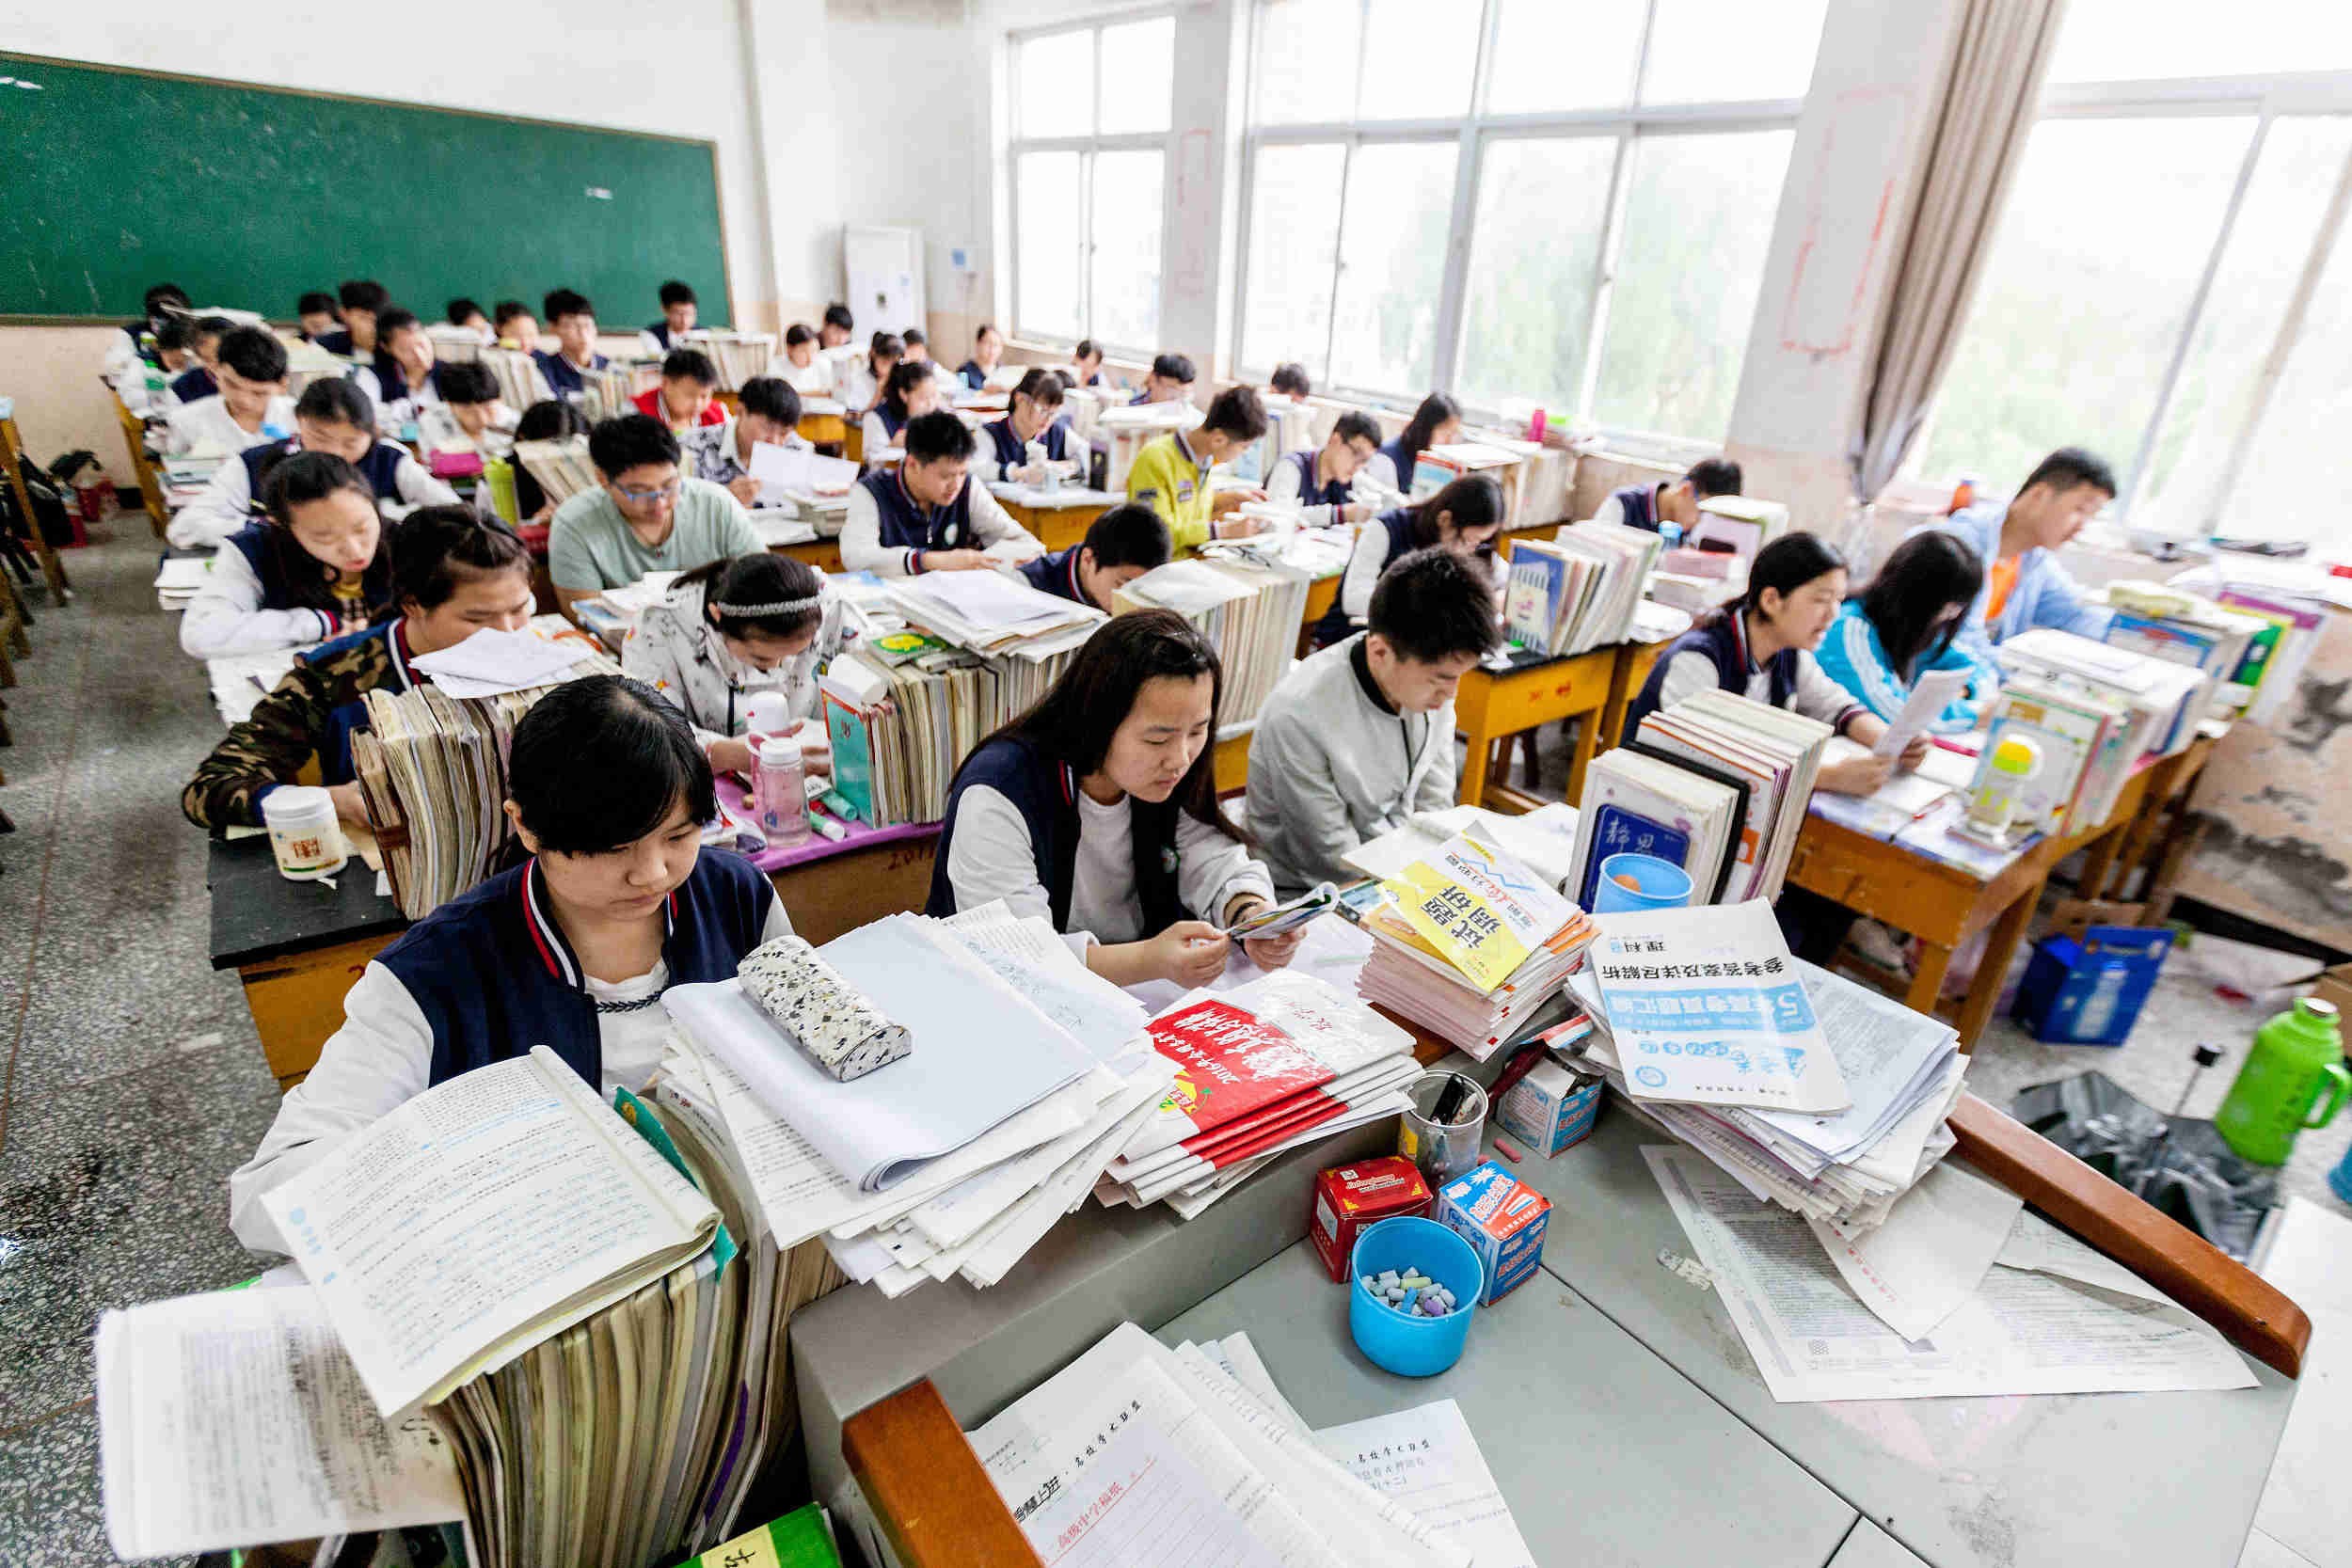 В школе китайский изучает 60 учащихся. Средняя школа в Китае. Среднее образование в Китае. Современное образование в Китае. Современные школы Китая.